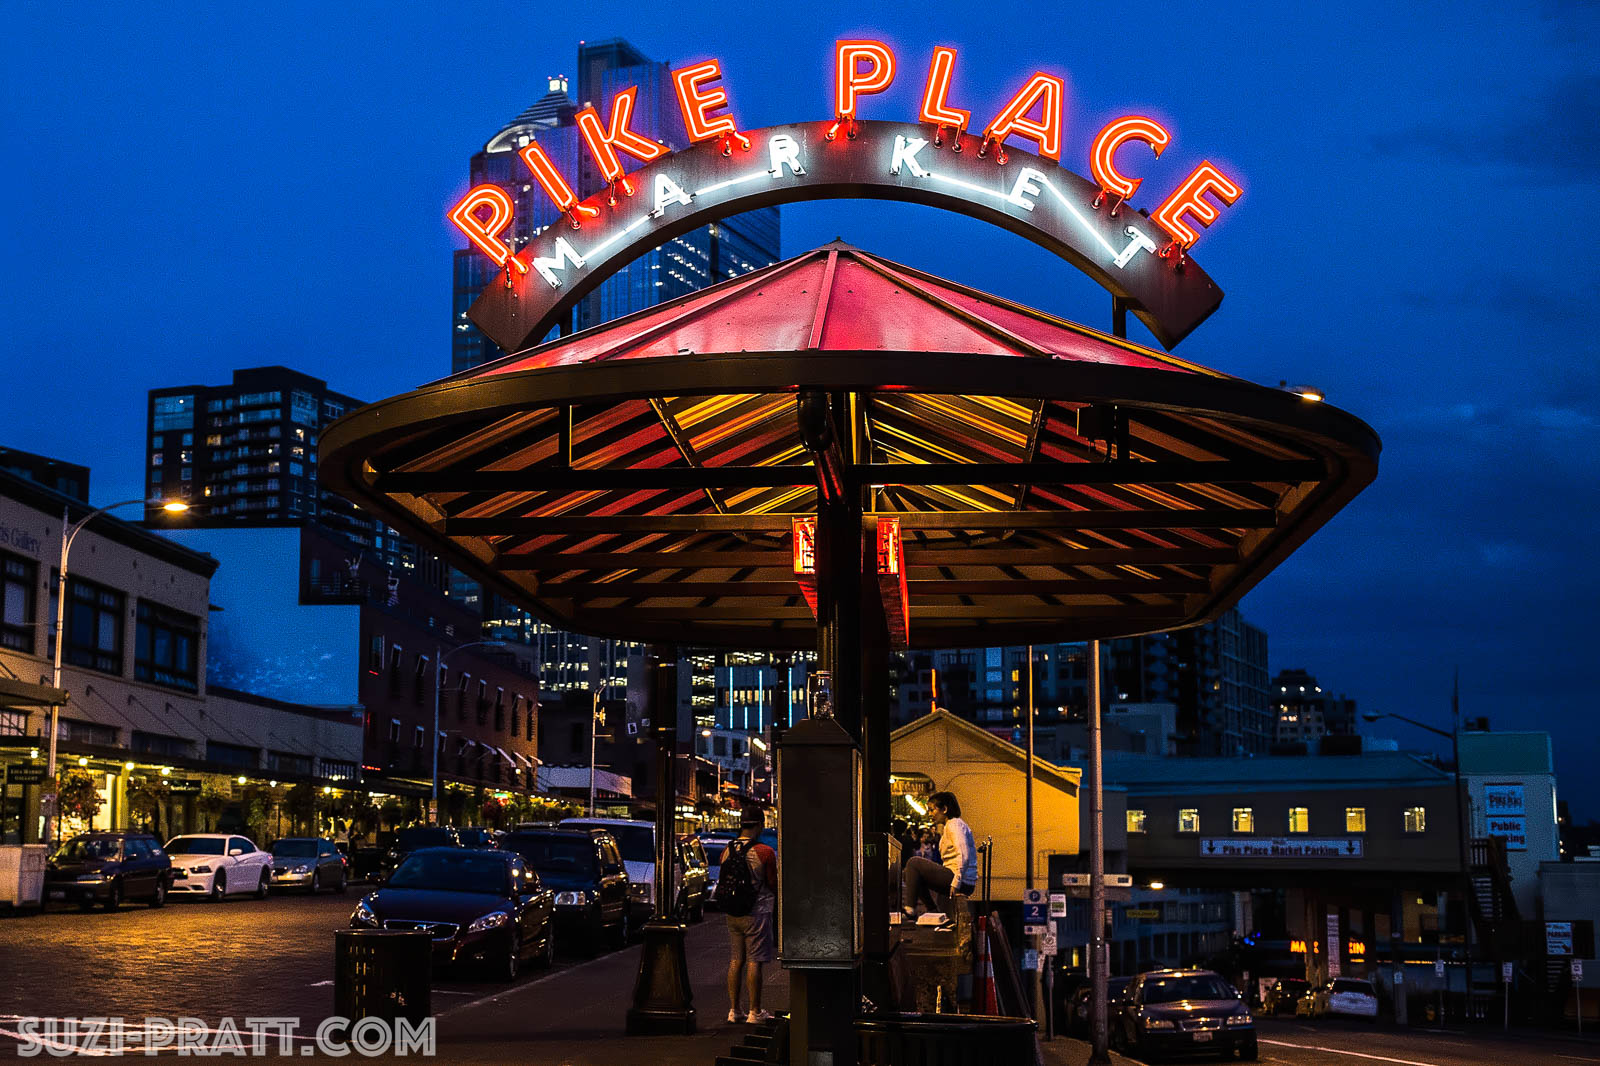 Pike Place Public Market in Seattle